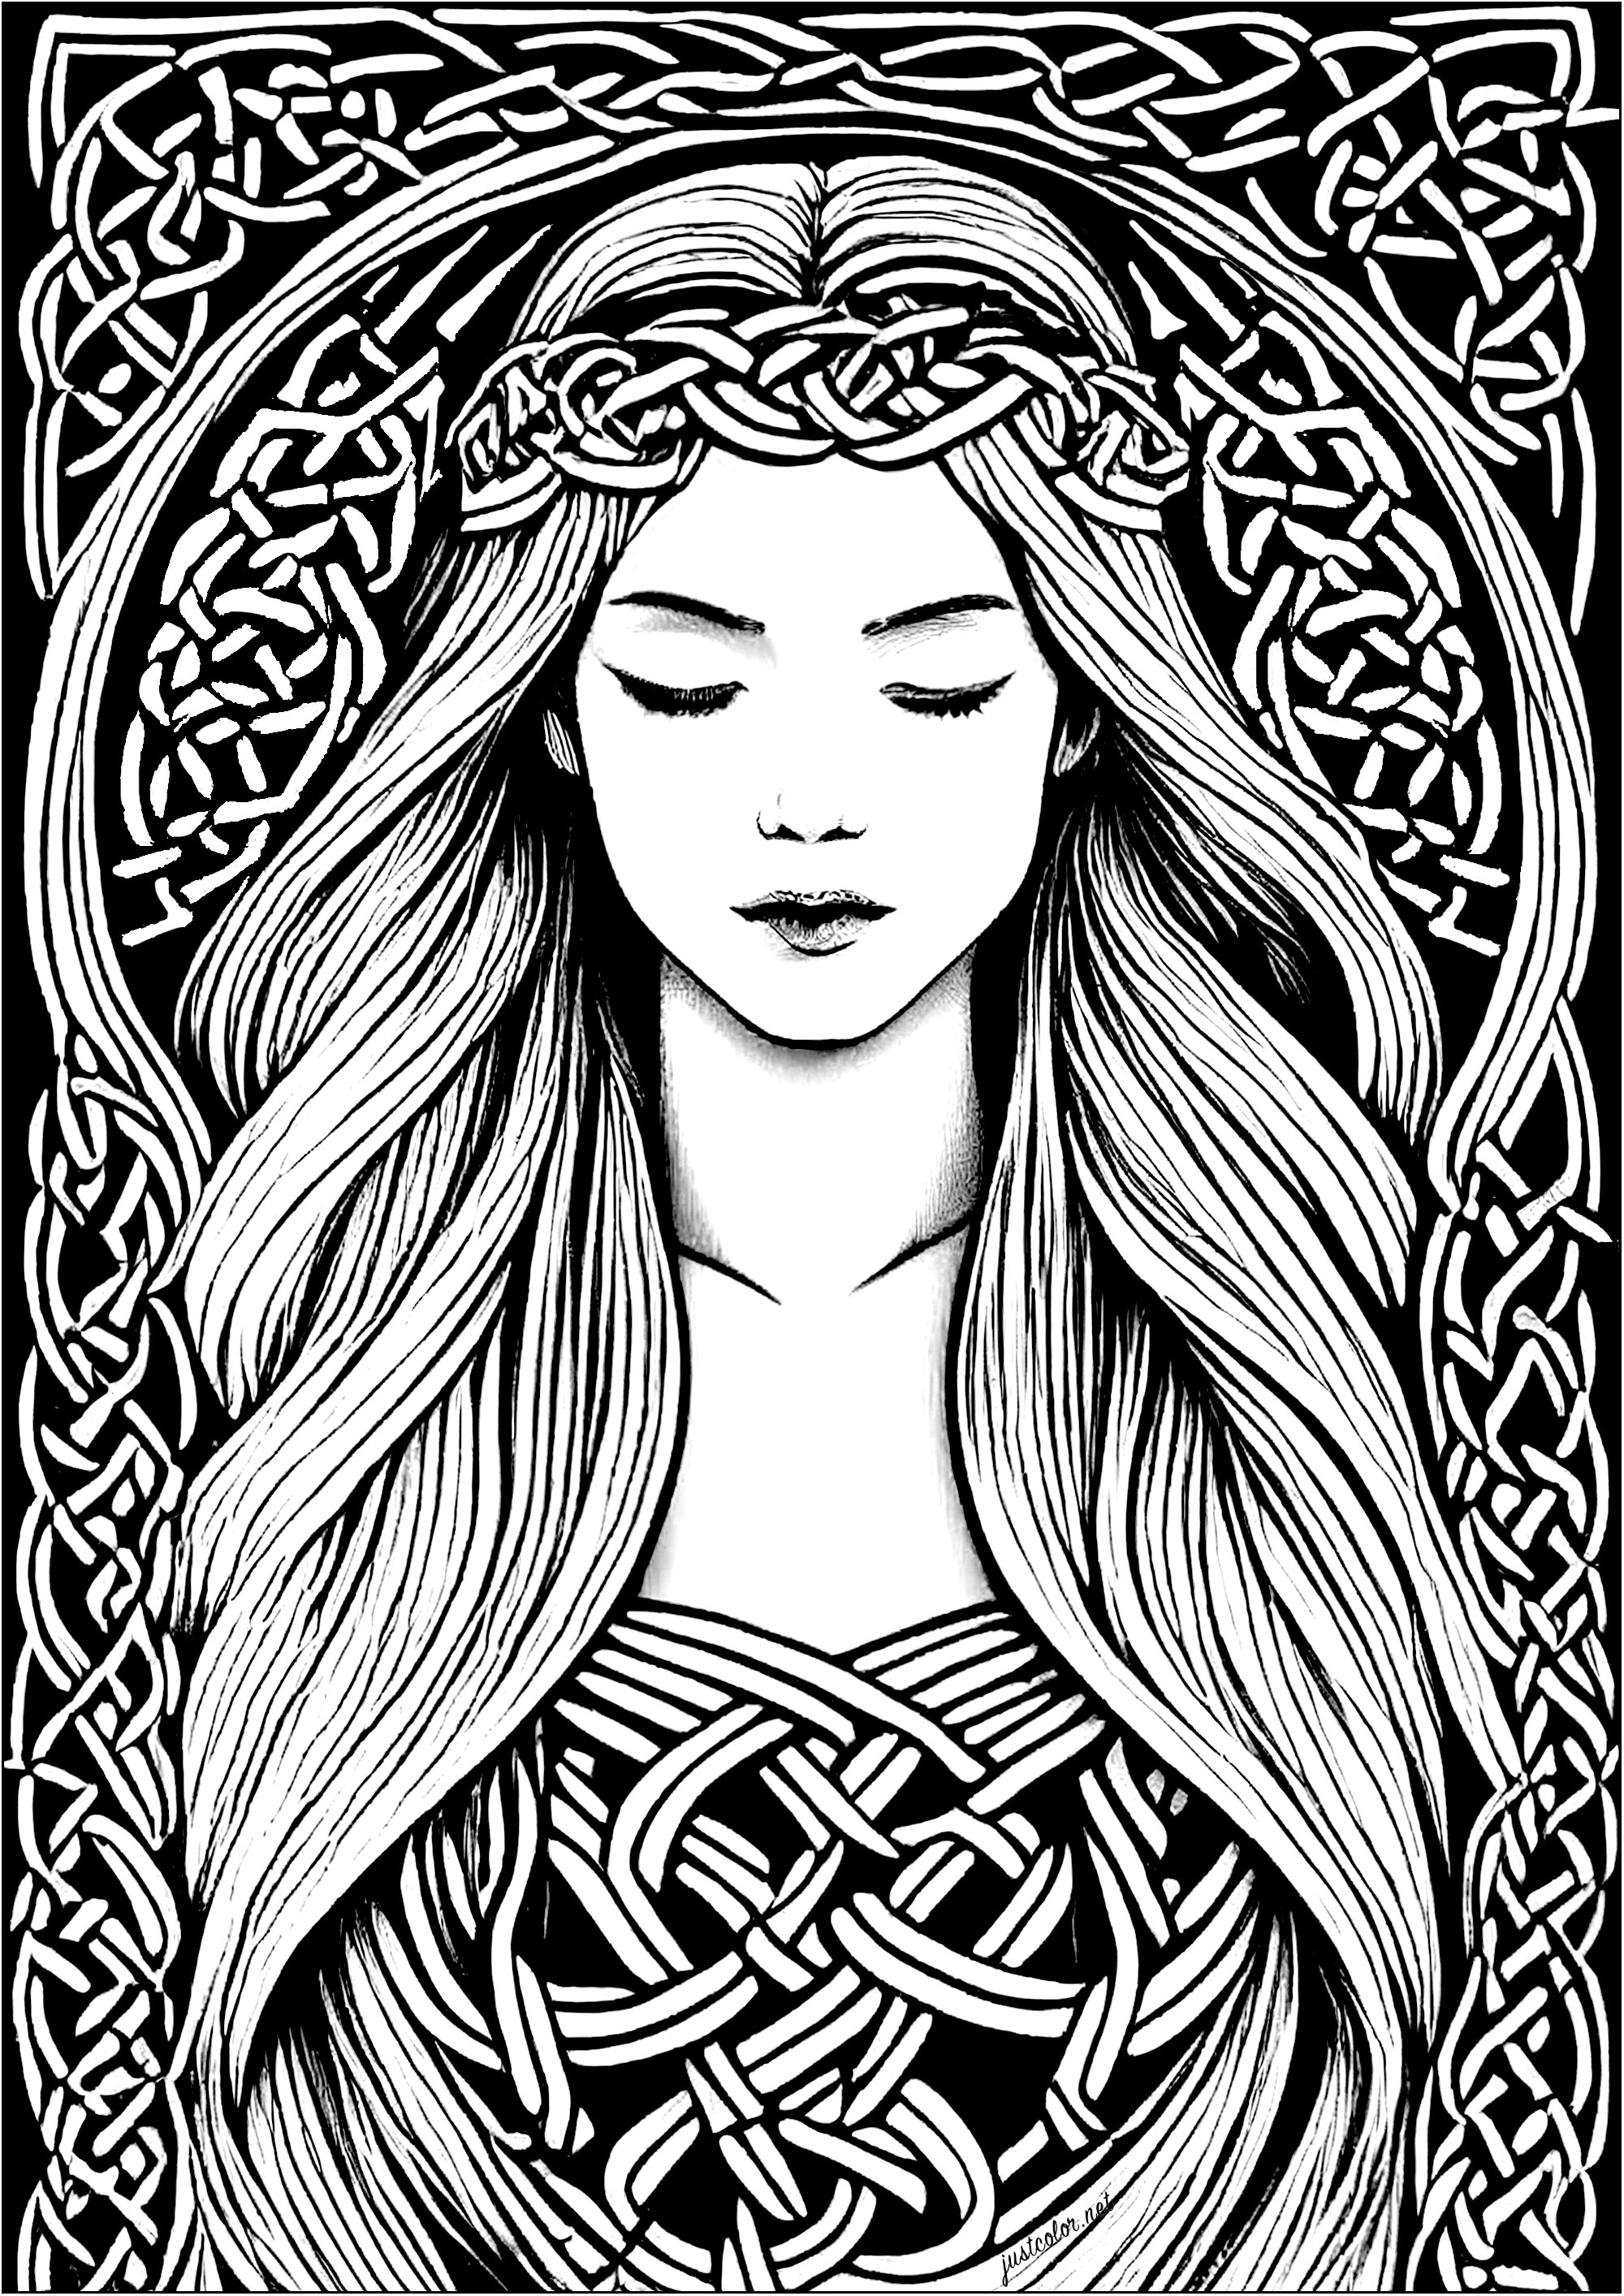 Coloriage d'une jeune femme endormi, inspiré de l'art celtique. Les motifs présents dans tout ce dessin sont inspirés par les motifs celtiques, caractérisés par leurs intrications et formes végétales semblables à des racines.